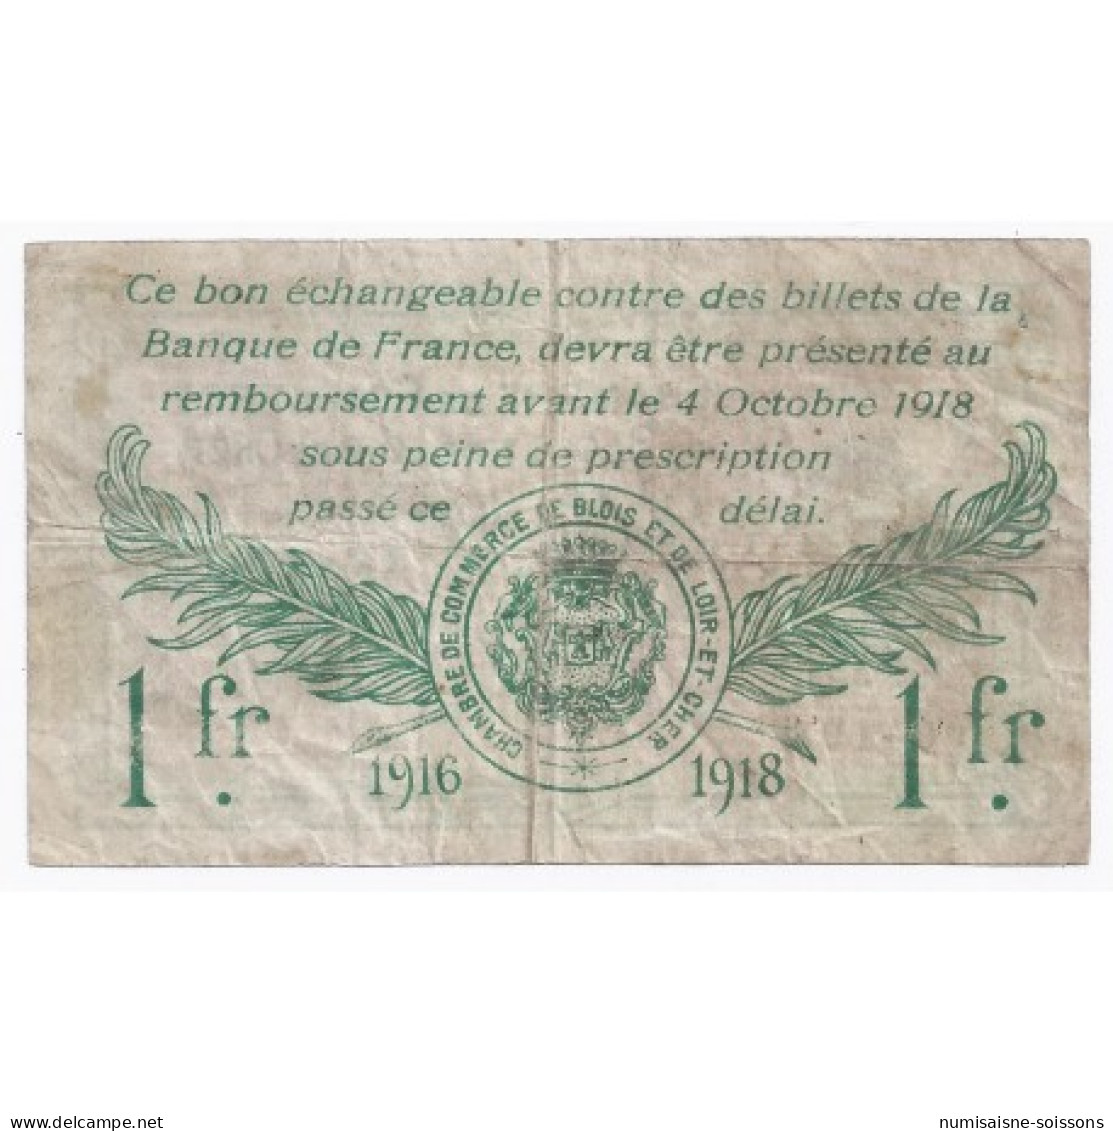 41 - BLOIS ET LOIR-ET-CHER - CHAMBRE DE COMMERCE - 1 FRANC - 03/10/1916 - TB+ - Bonds & Basic Needs